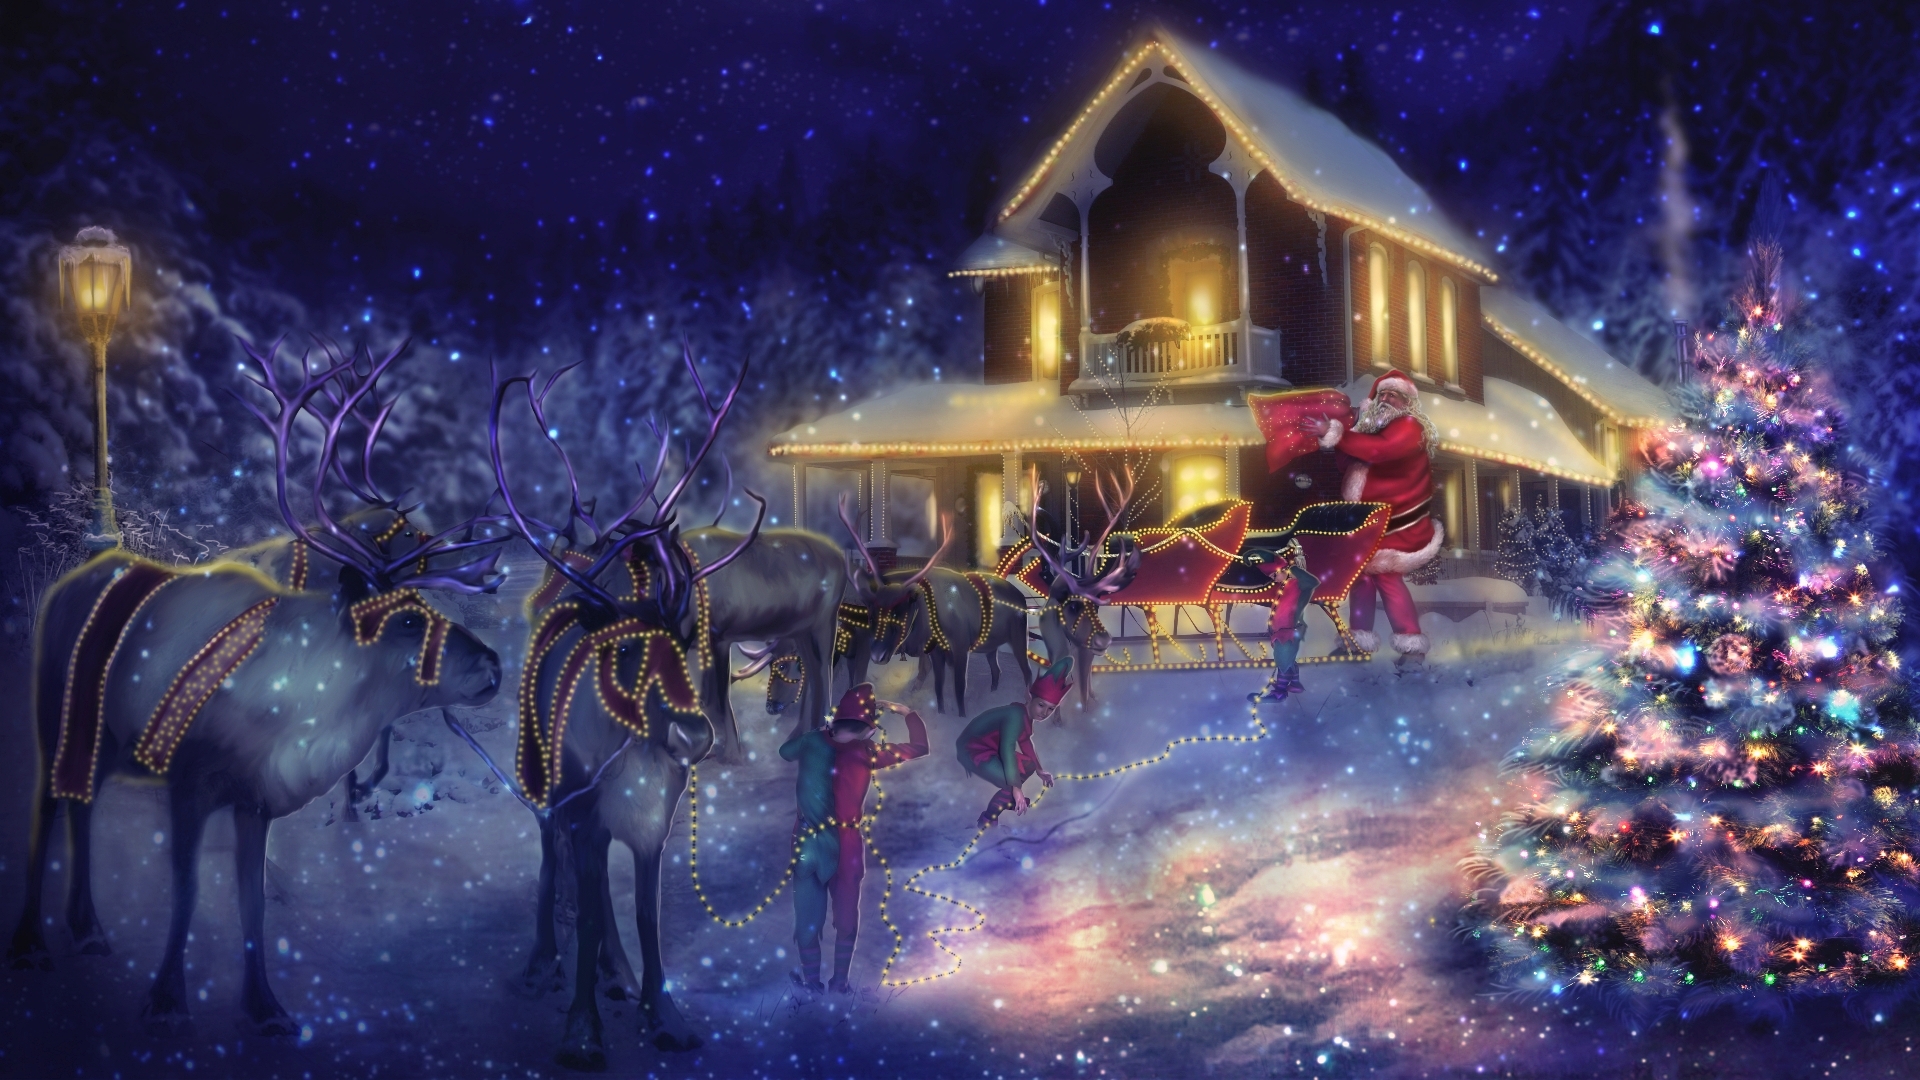 Đêm Giáng Sinh đến rồi. Hãy cùng xem những hình ảnh lung linh về đêm lễ hội, để cảm nhận được không khí ấm áp và hân hoan của mùa lễ này.